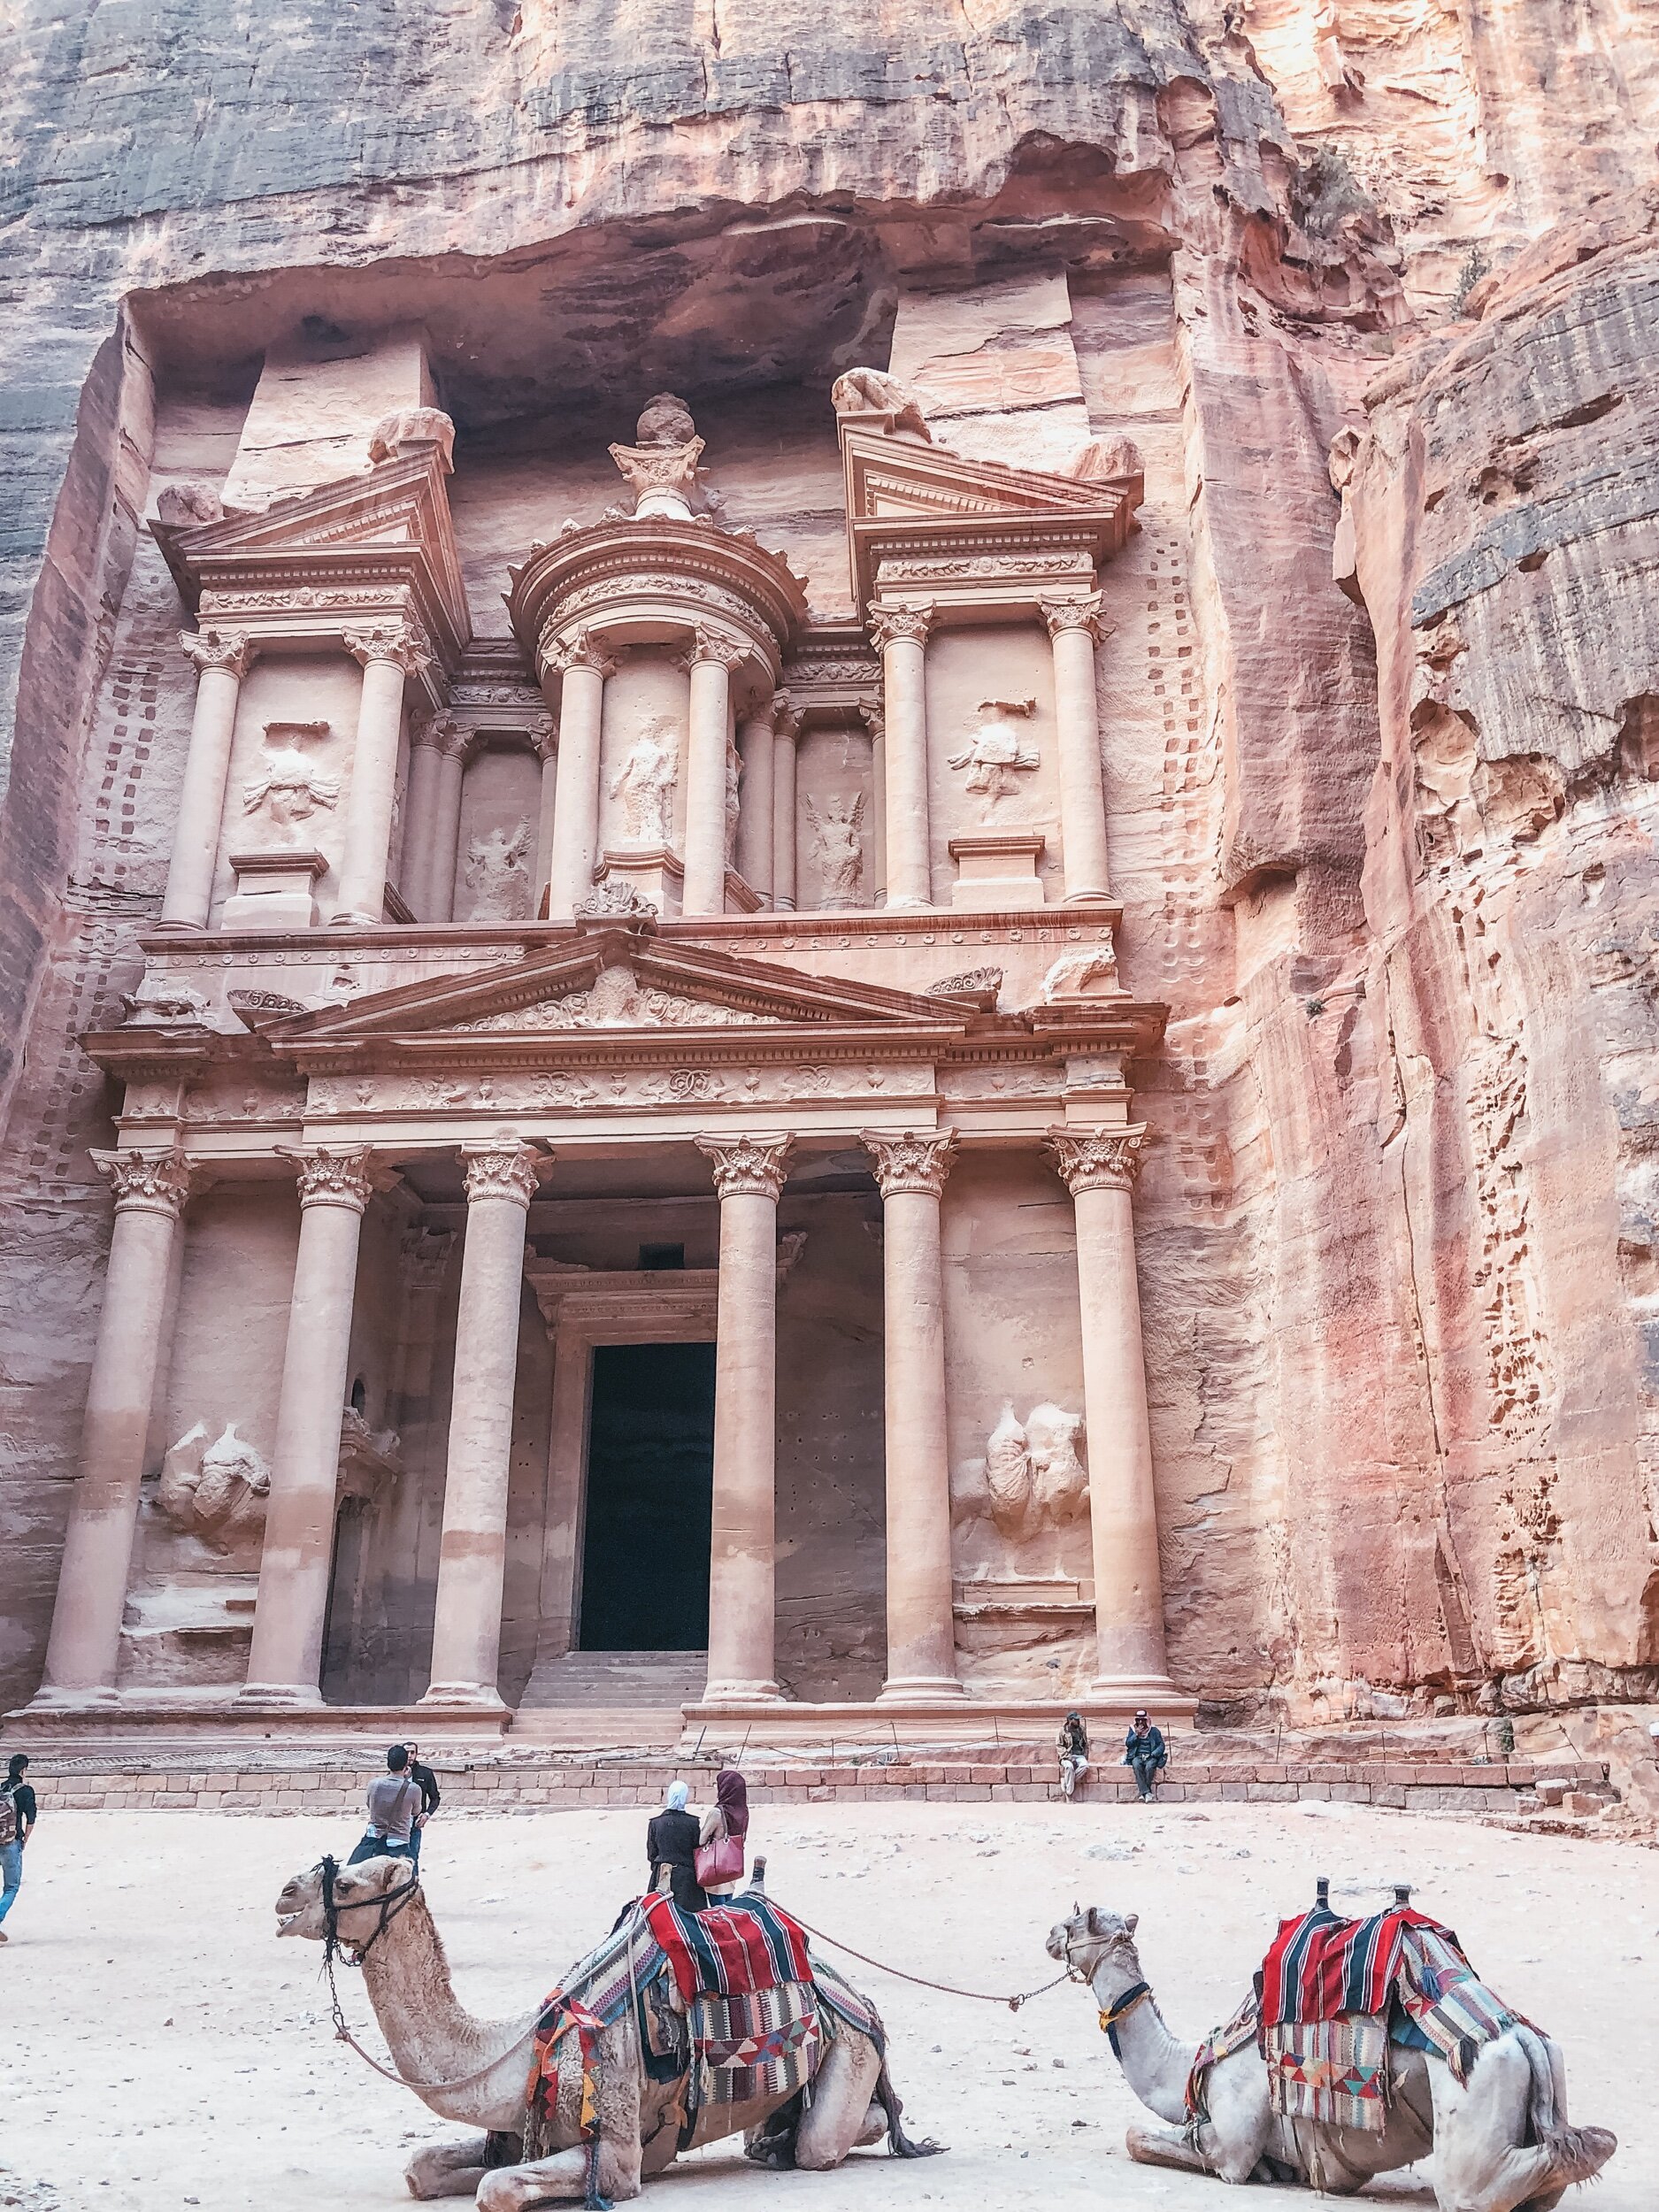  The Treasury of Petra. 